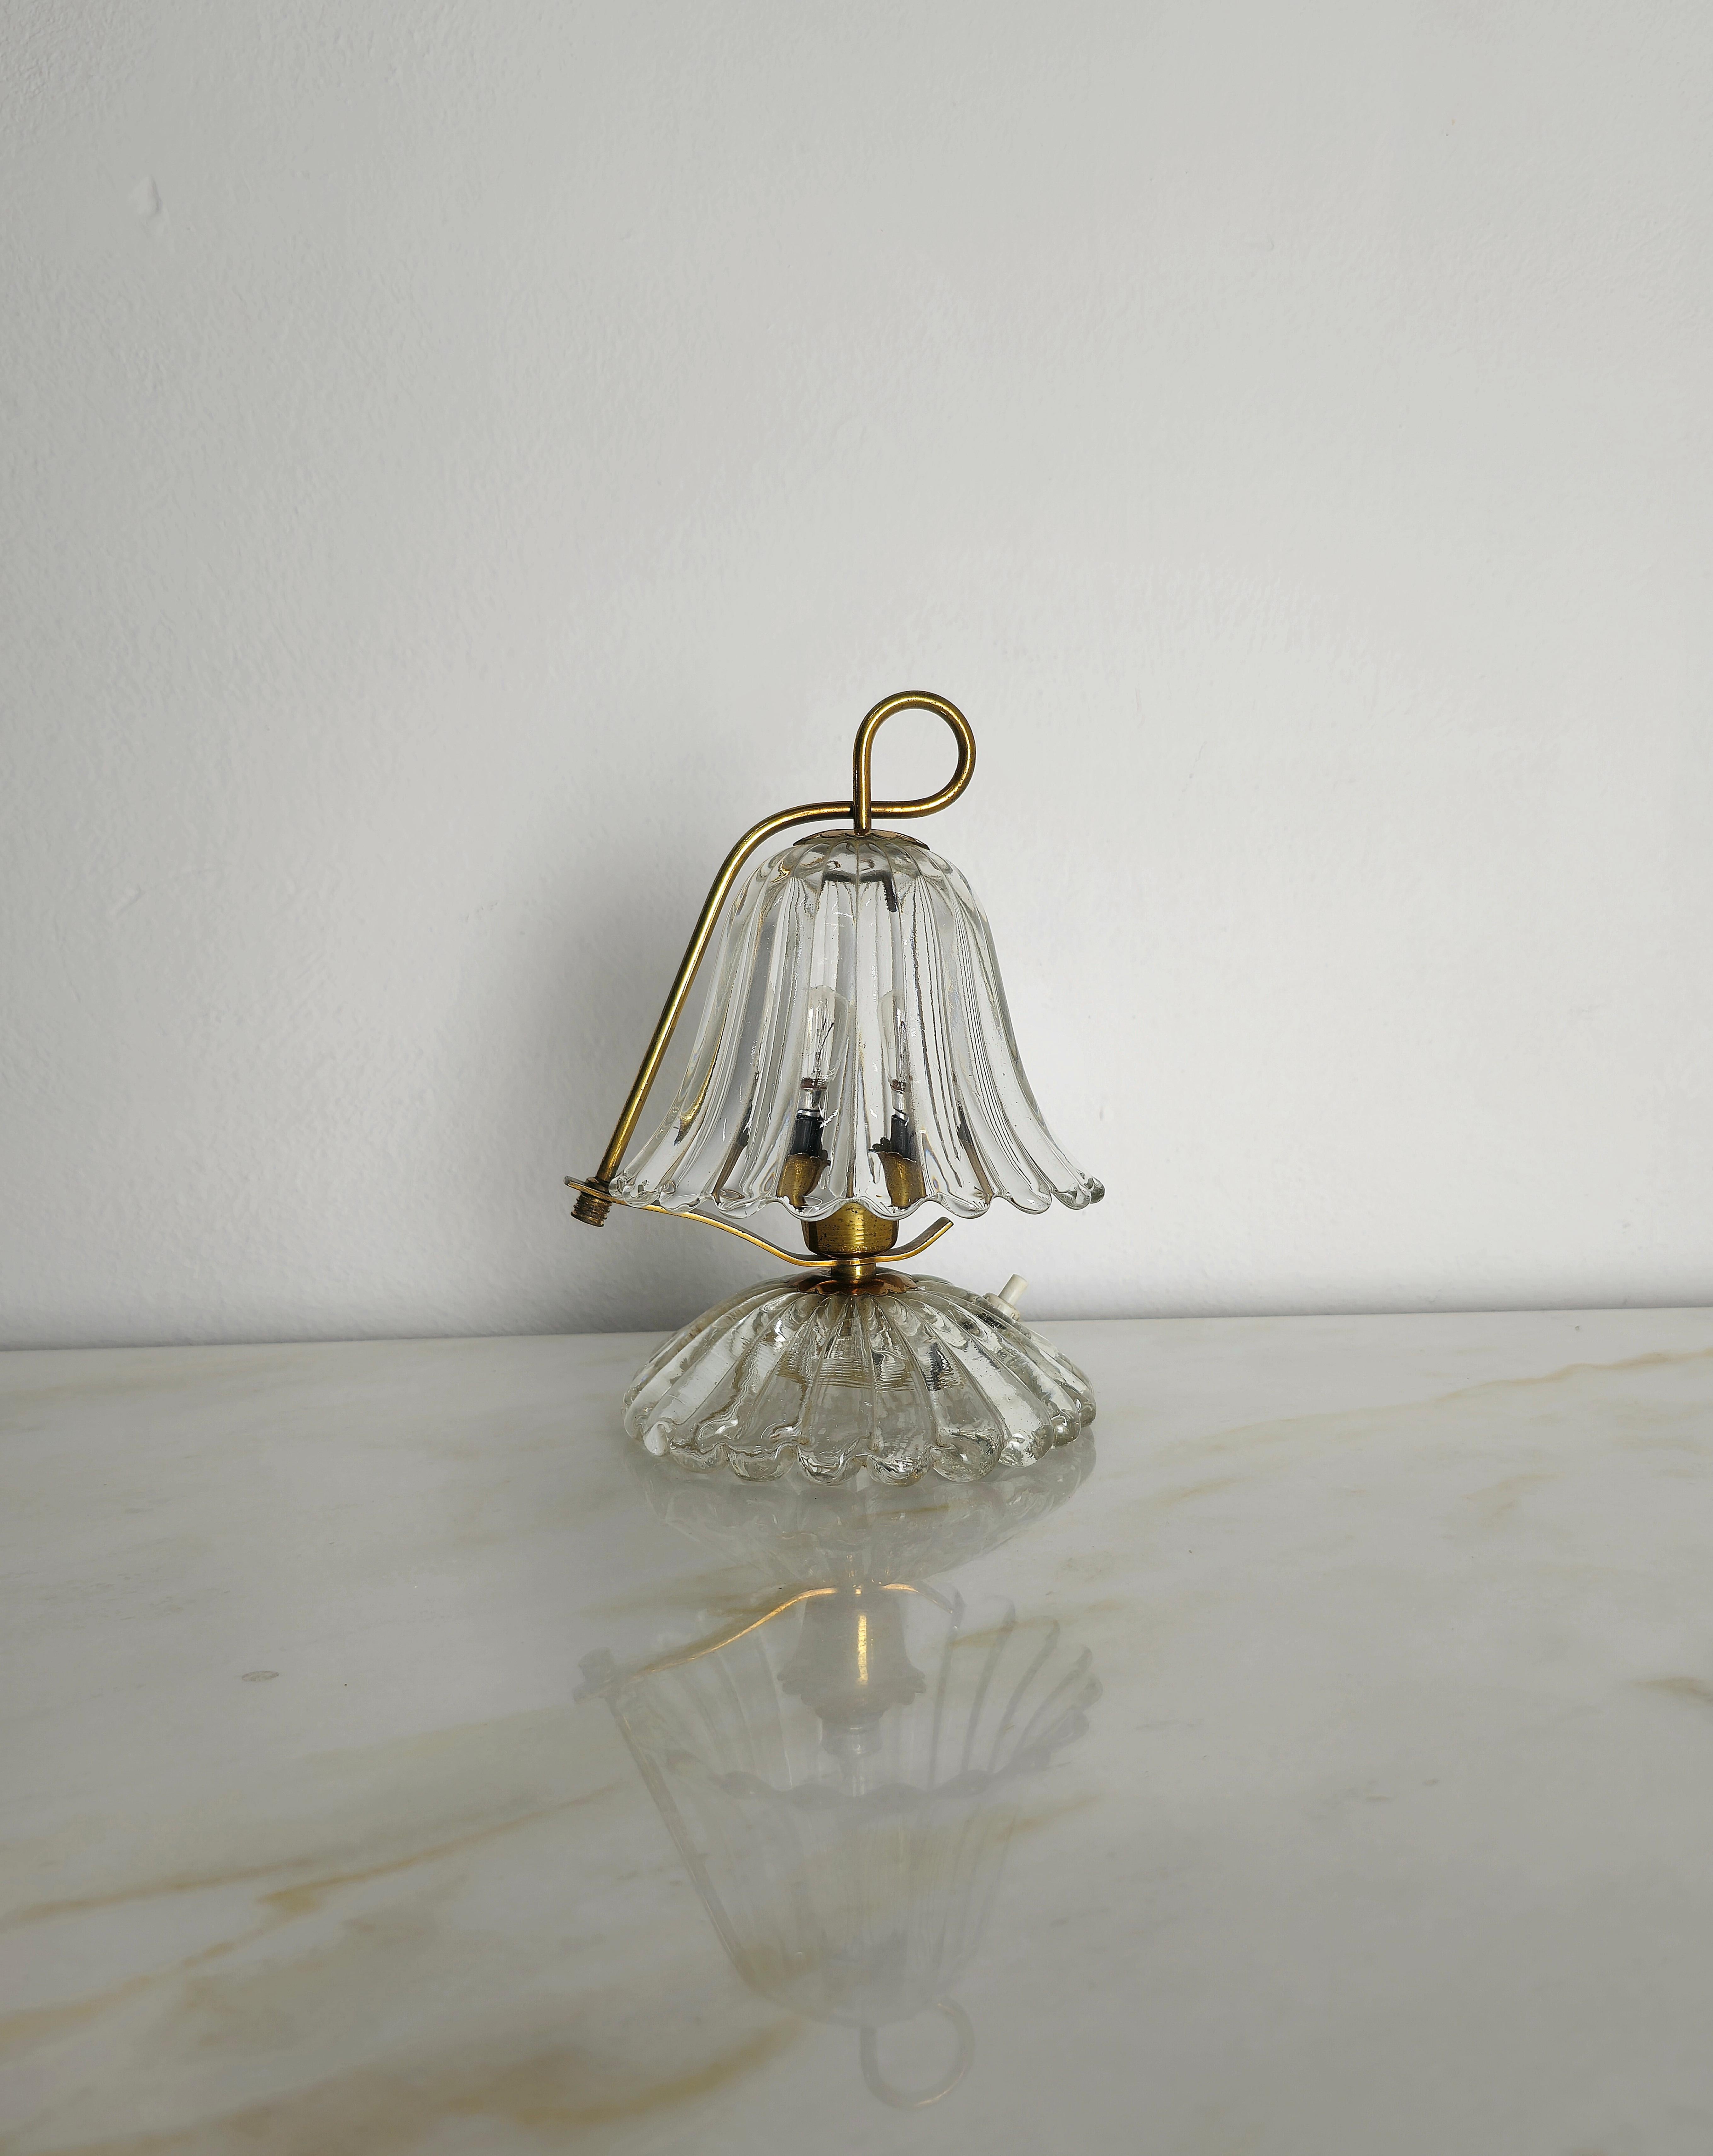 Petite lampe de table produite en Italie dans les années 1940 par Barovier&Toso.
La lampe de table est en laiton et en verre de Murano, avec la particularité d'avoir le verre supérieur réglable à droite ou à gauche, comme on peut le voir dans la